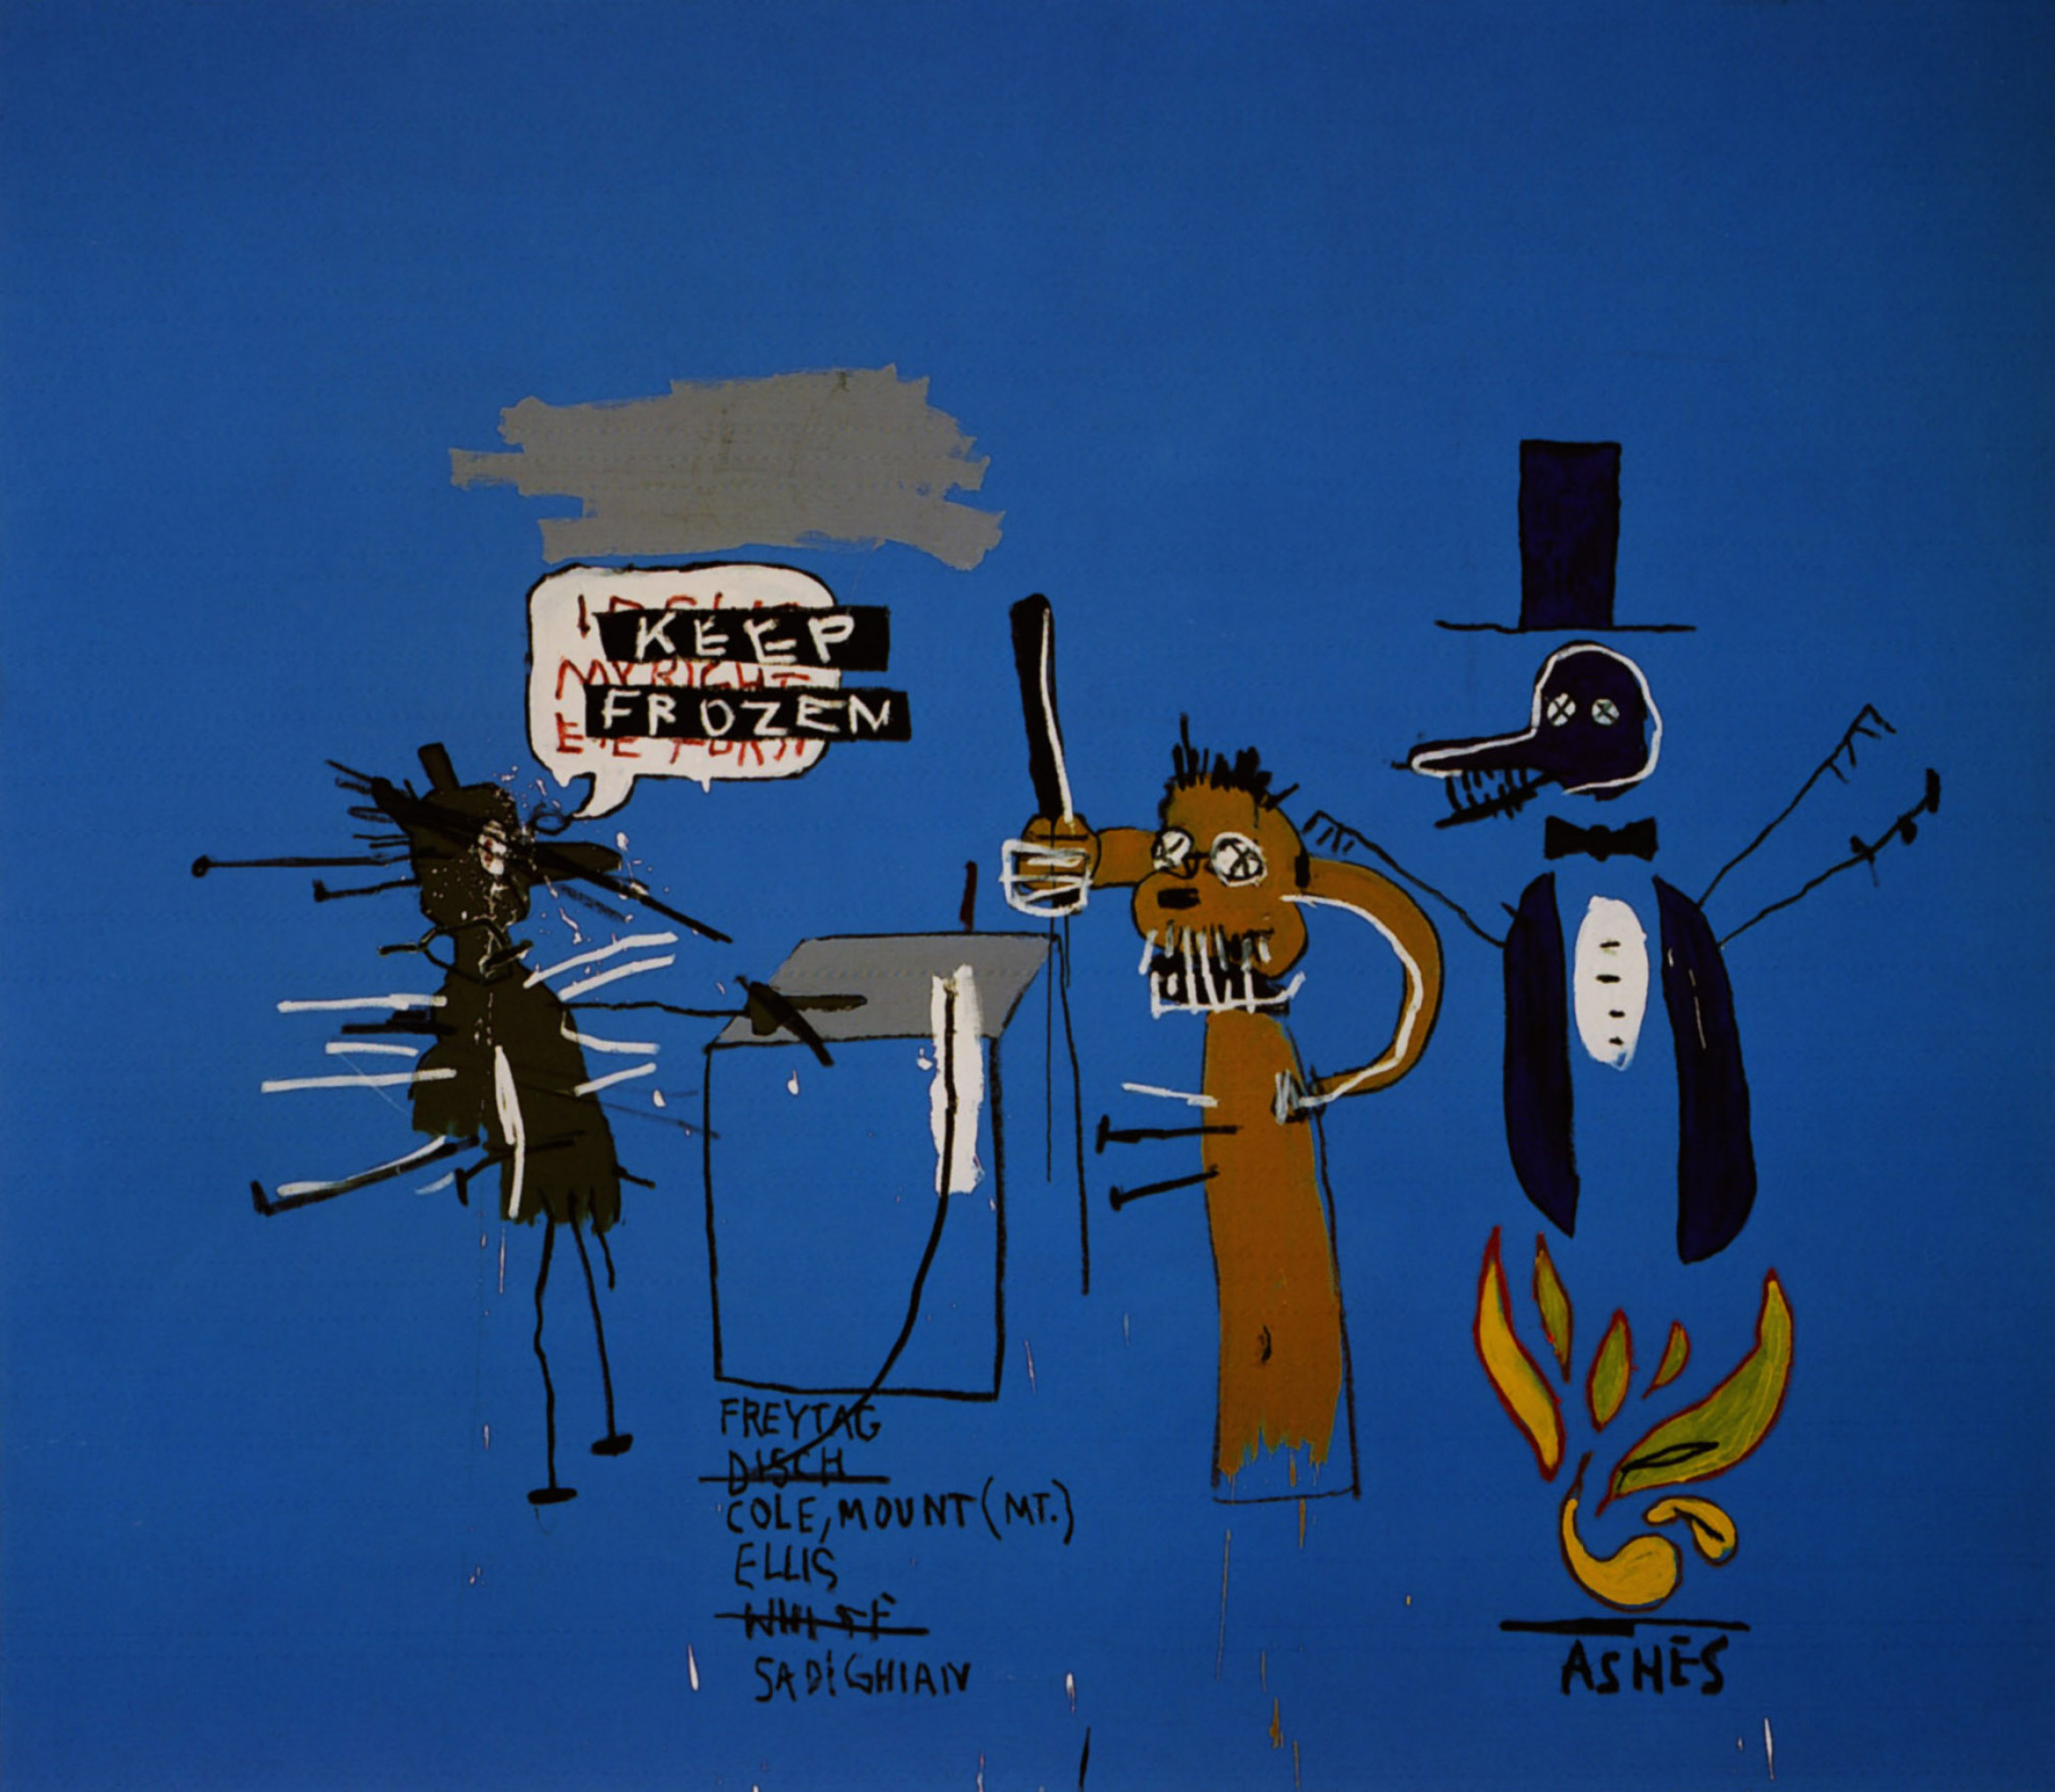 The Dingoes That Park Their Brains (Динго, паркующие свои мозги), 1988. Жан-Мишель Баския (Jean-Michel Basquiat) - американский художник. Неоэкспрессионизм